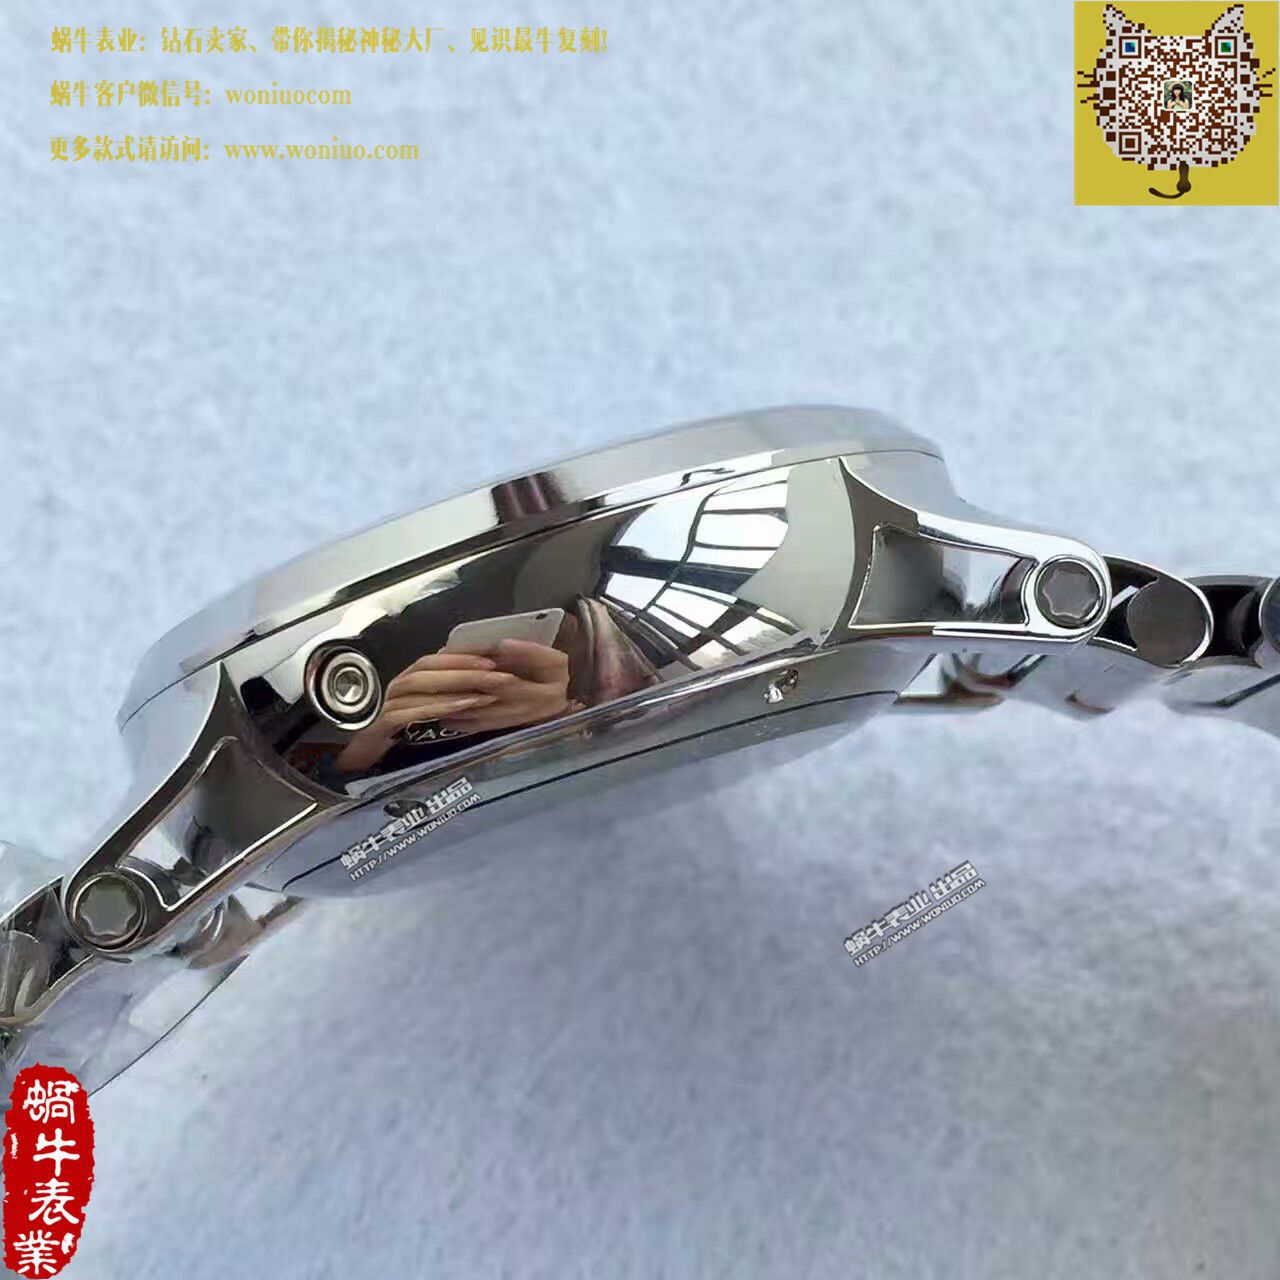 【台湾厂一比一超A高仿手表】万宝龙时光行者系列U036972腕表 / MB011